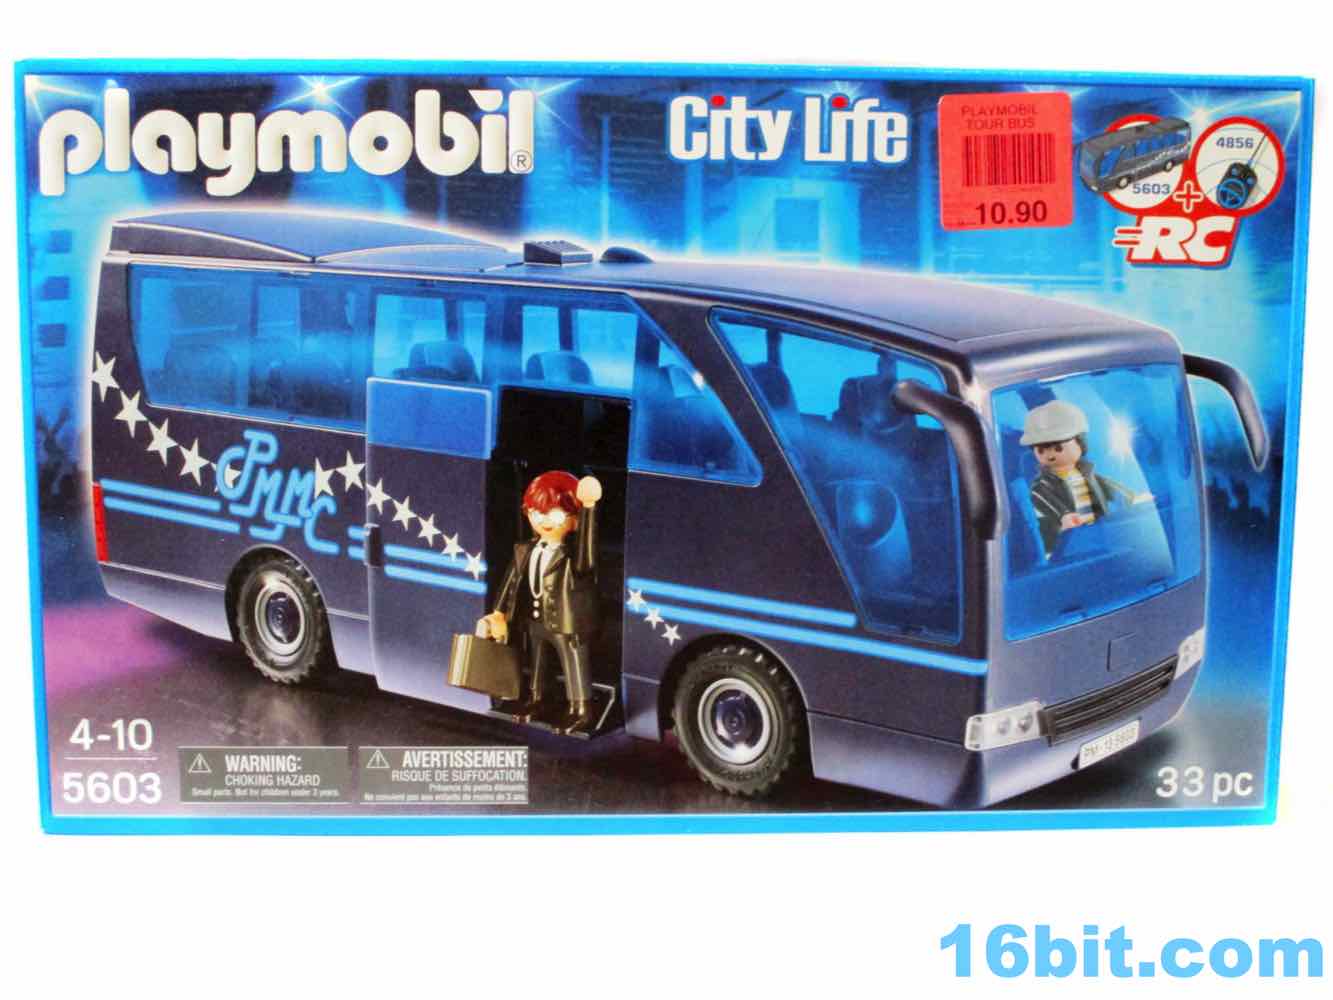 Naar de waarheid Goneryl behandeling 16bit.com Figure of the Day Review: Playmobil City Life 5603 Tour Bus Set